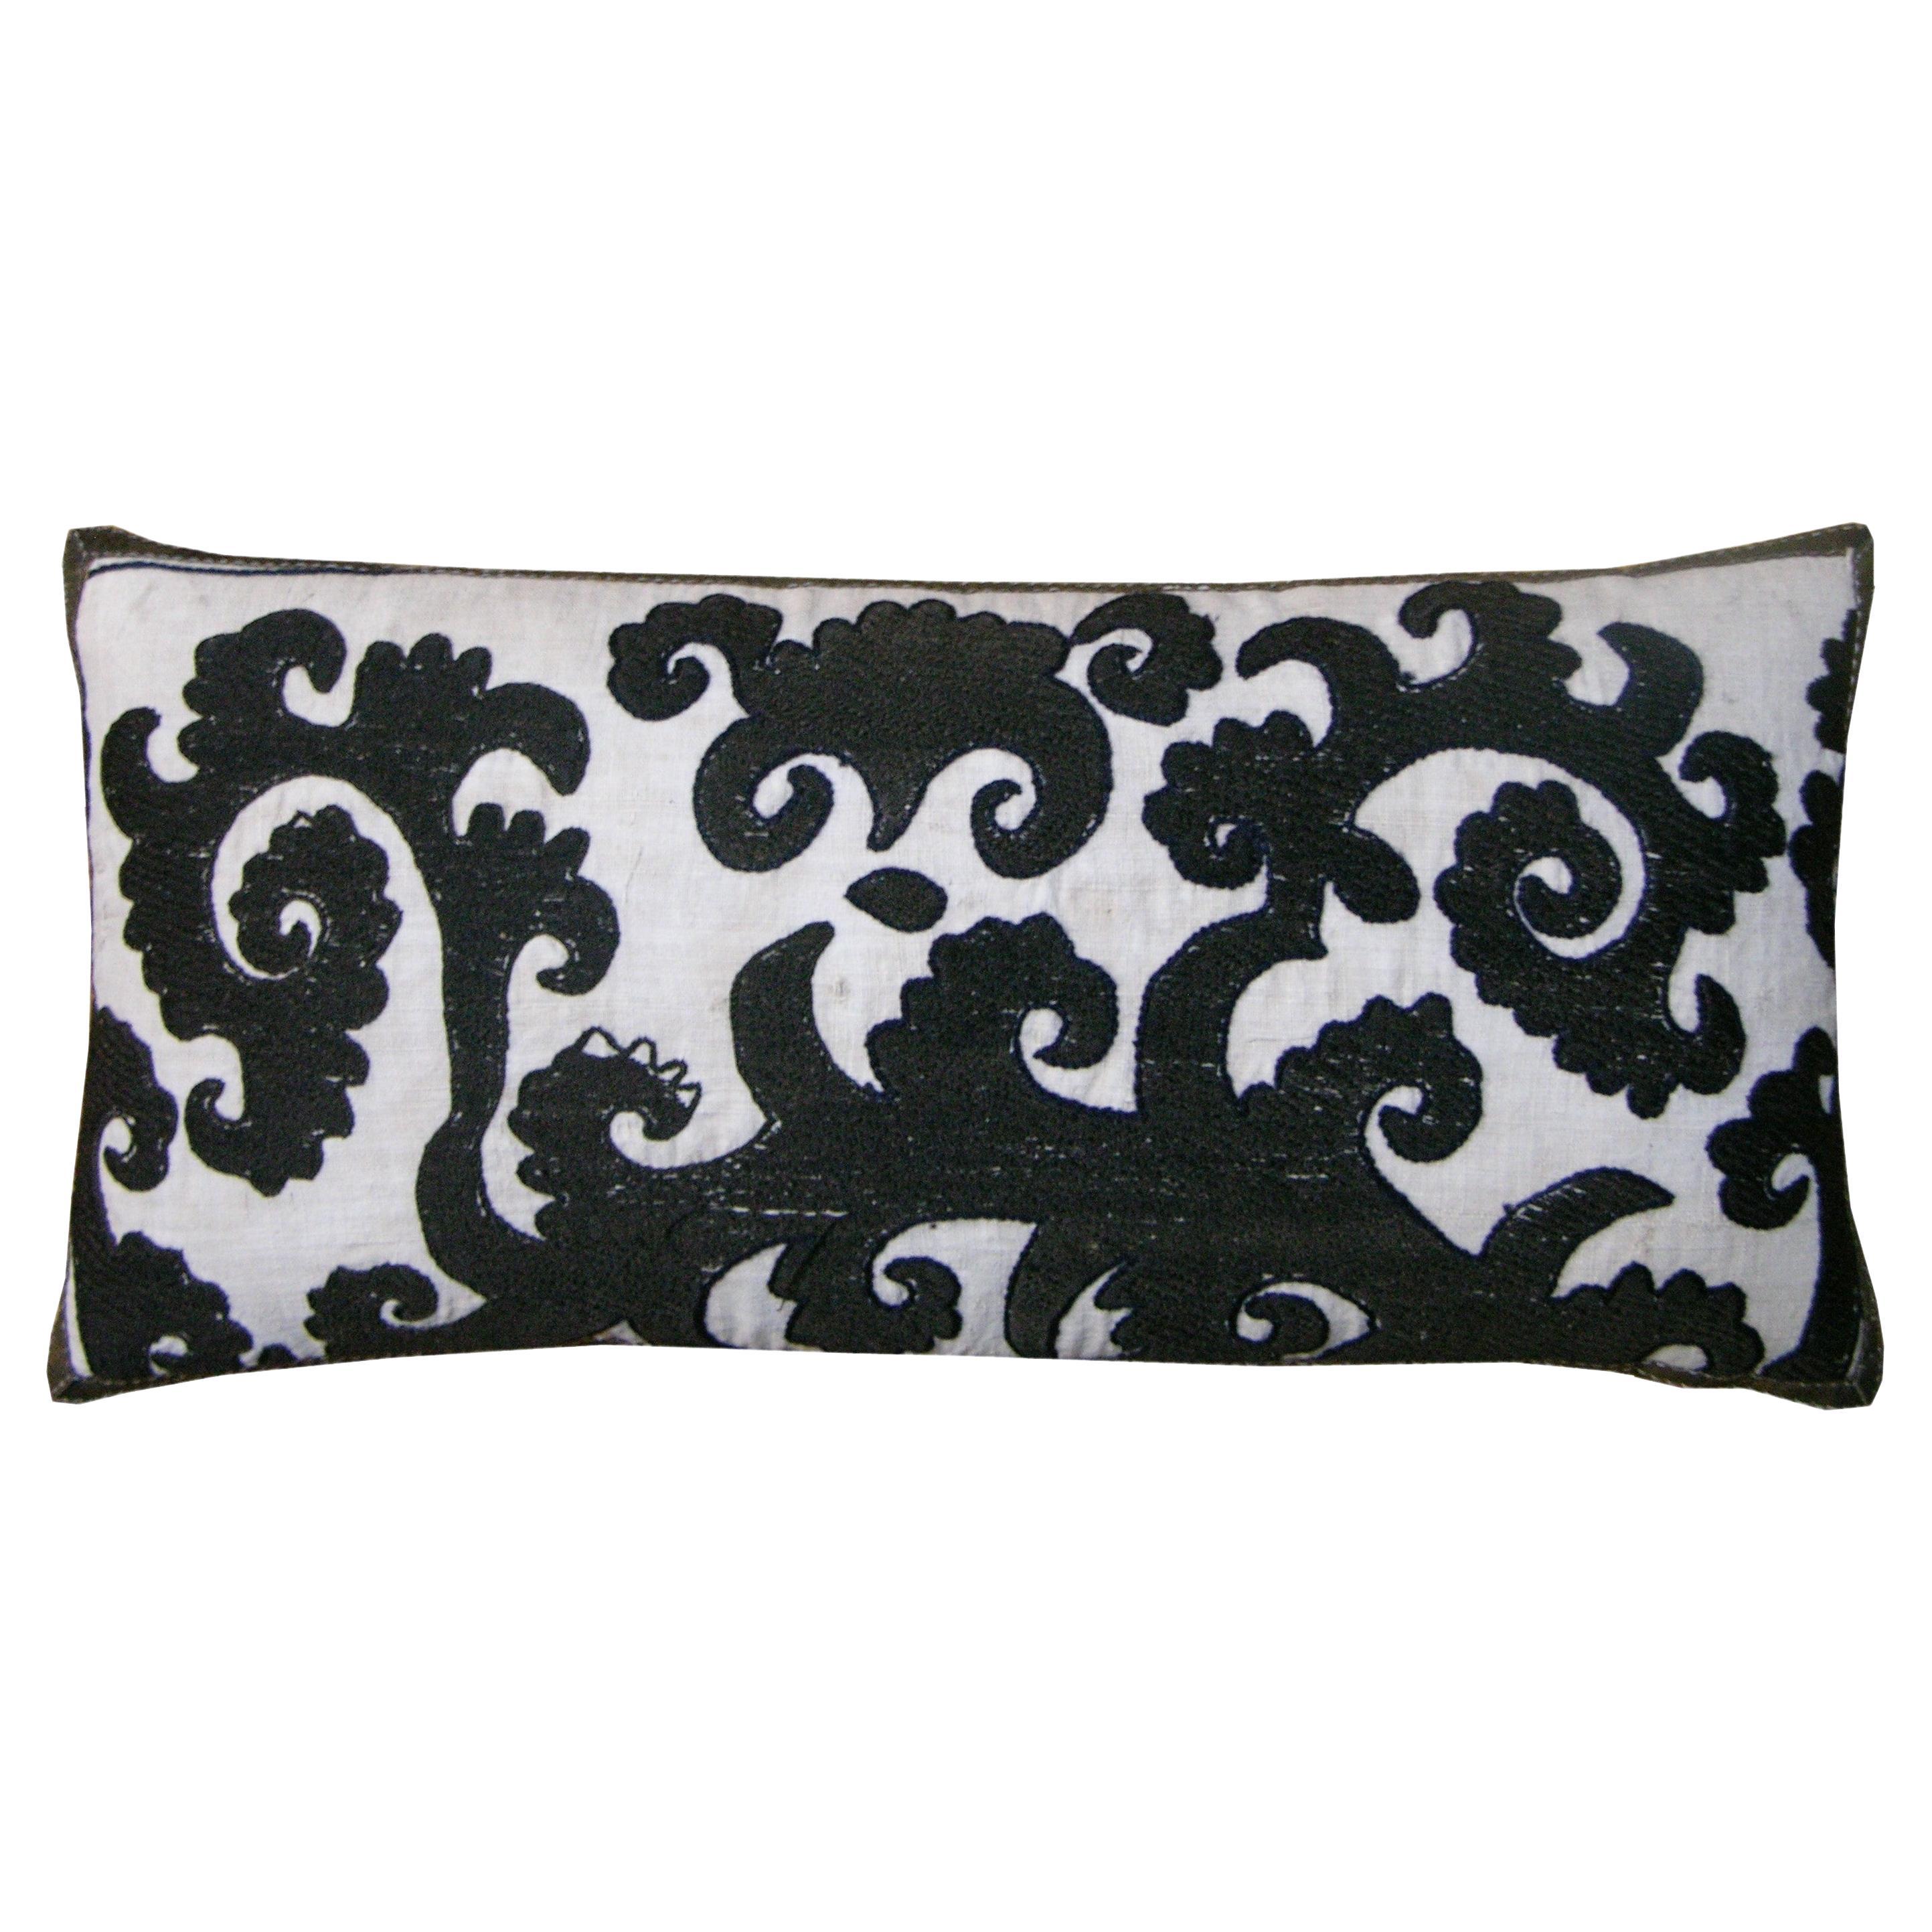 Circa 1900 Antique Susani Embroidery Pillow (Oreiller en broderie Susani)